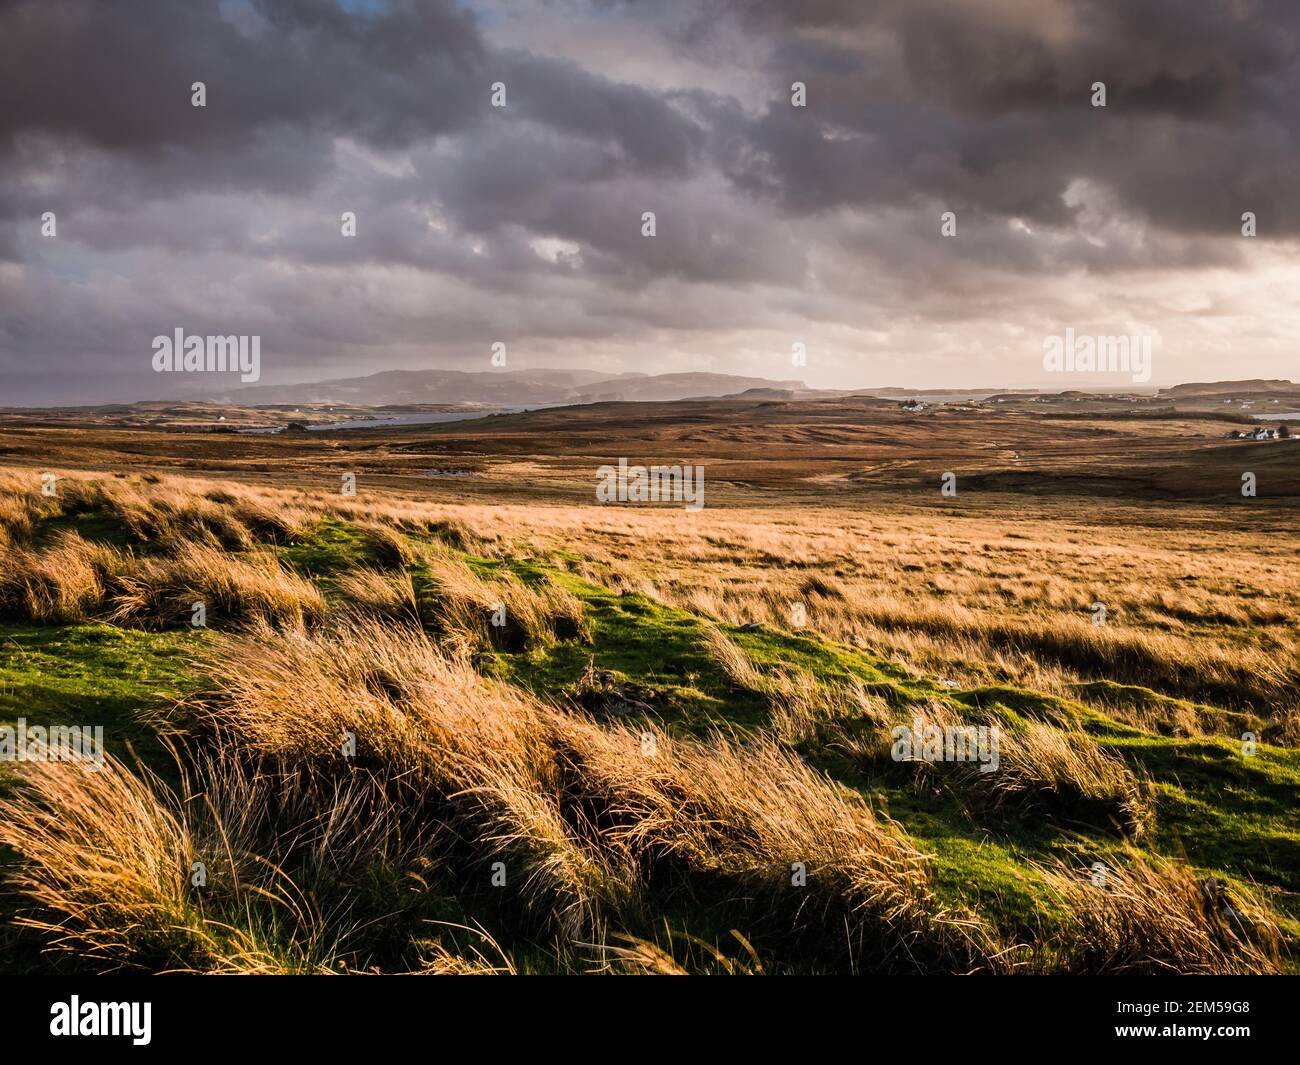 L'île de Skye s'amarre alors qu'une tempête commence à s'accumuler dans l'ouest de l'Écosse. Banque D'Images